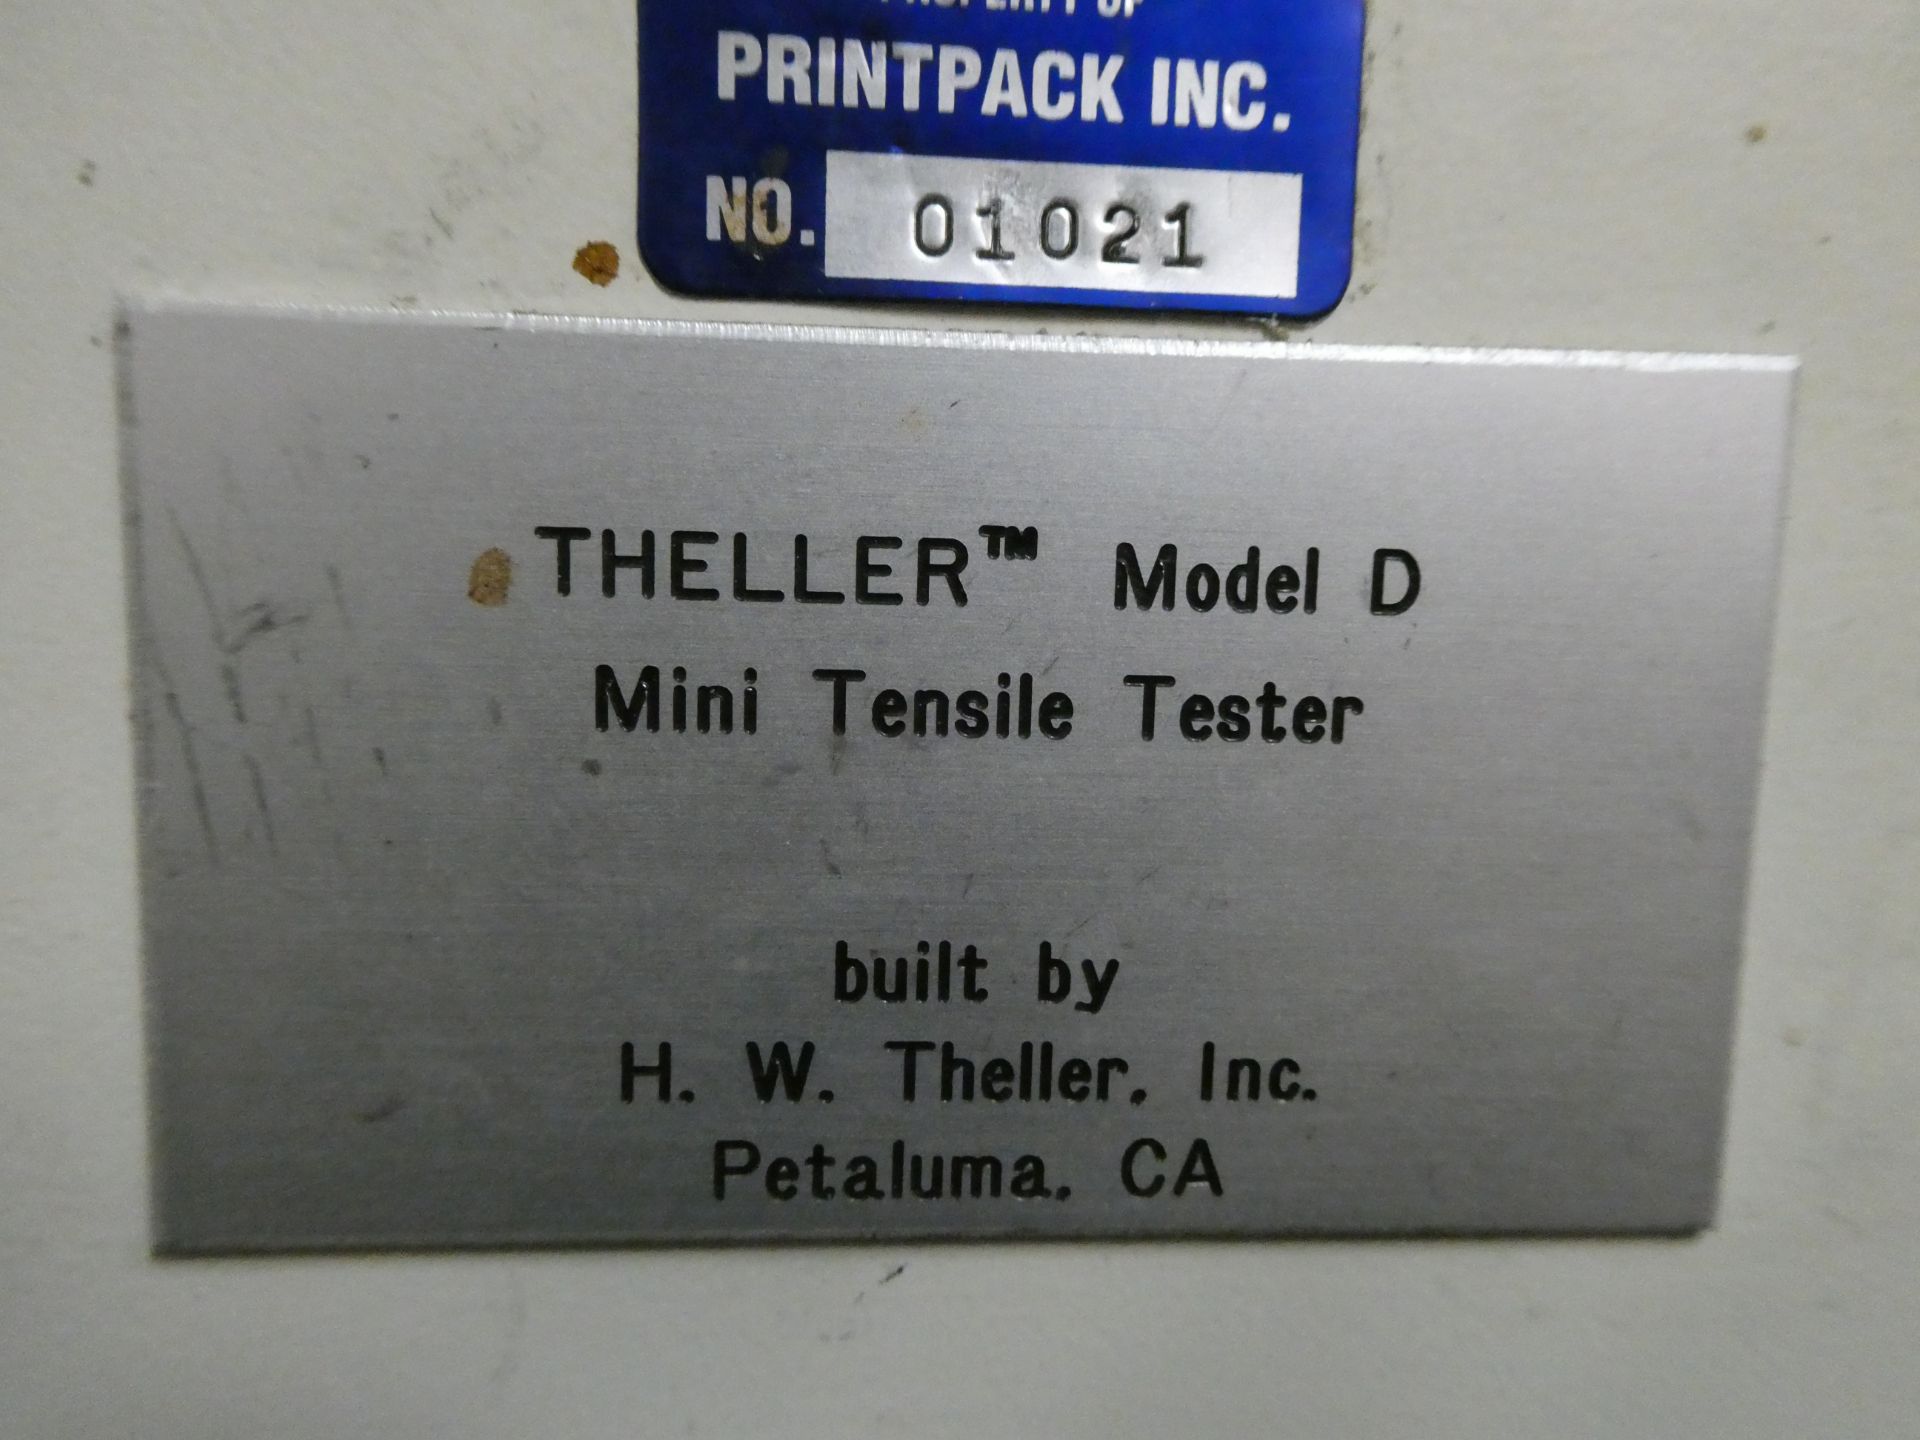 Theller model D mini tensile tester - Image 2 of 2